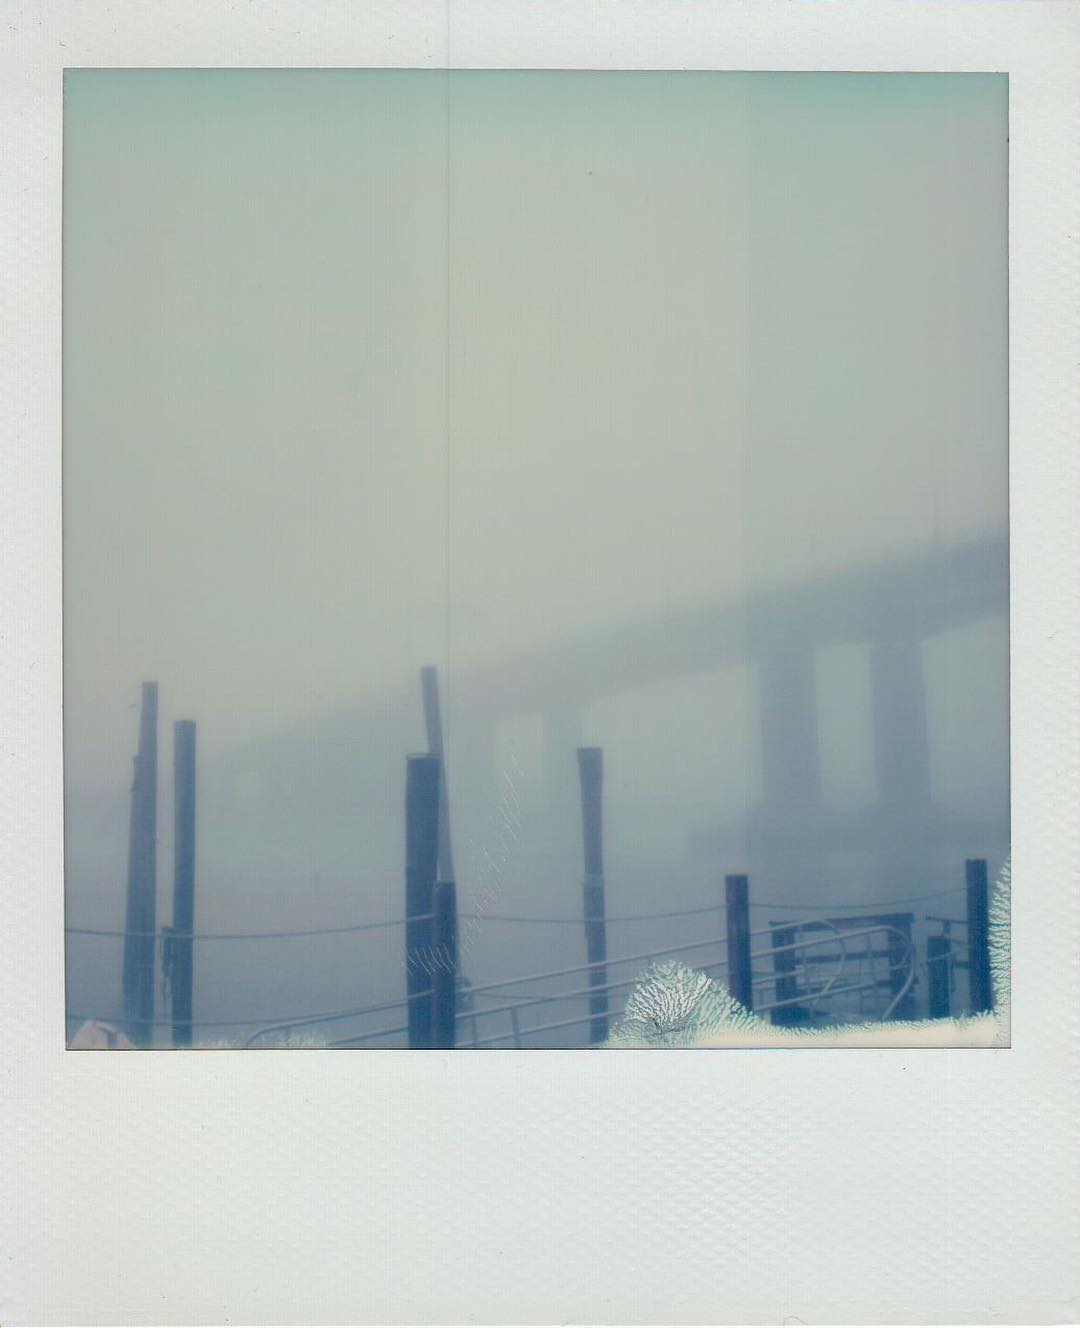 Foggy rainy bridge #sx70 #film #filmphotography #filmphotographic #impossibleproject #impossibleprojectfilm #expiredfilm